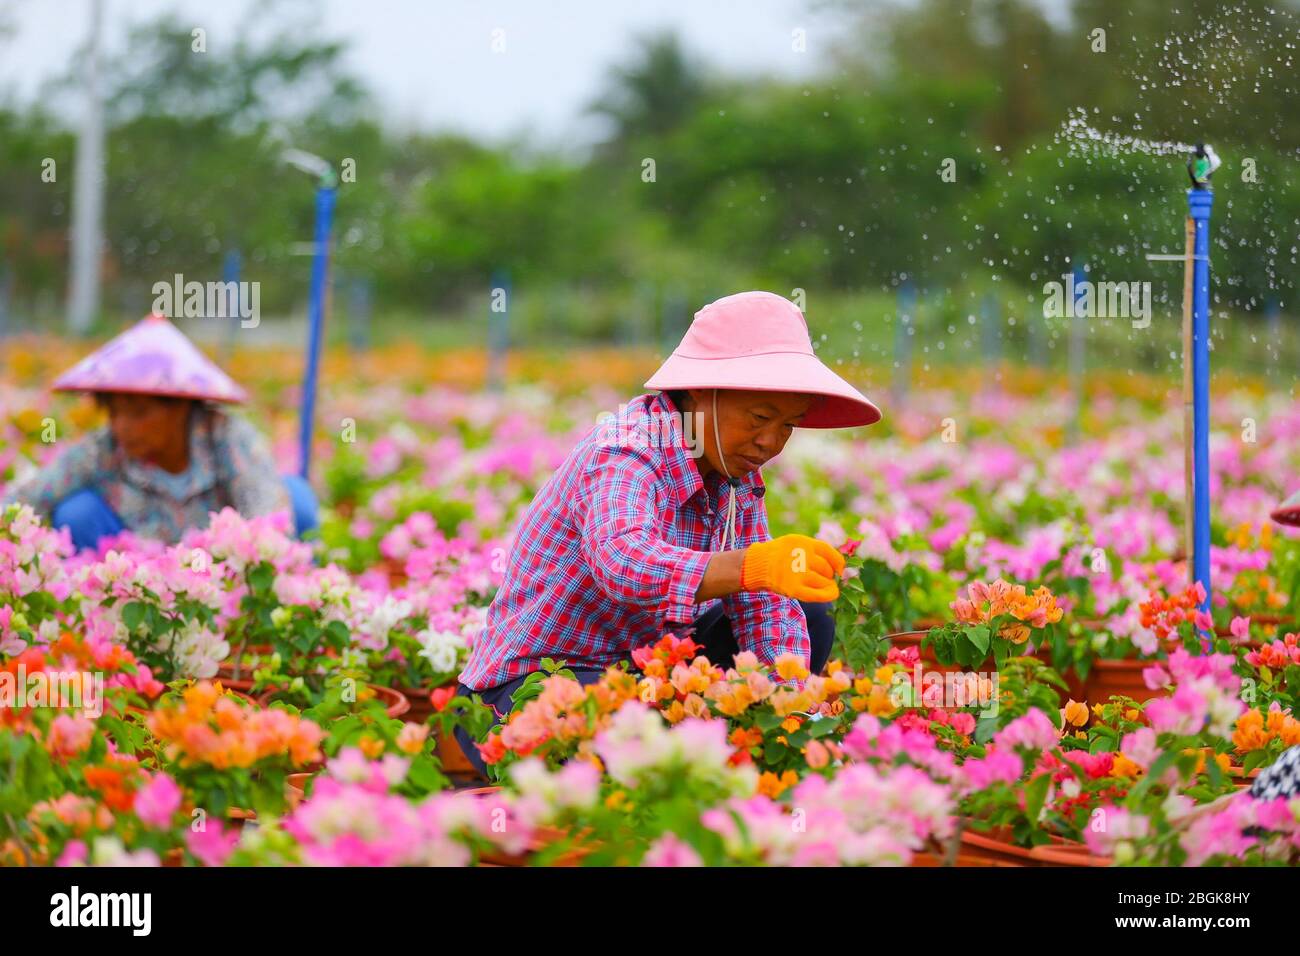 Les agriculteurs cultivent des bougainvillea dans une base de croissance de bougainvillea dans le village de Shentian dans le comté de Ding'an, dans la province de Hainan en Chine méridionale, le 11 mars 2020. 97 h Banque D'Images